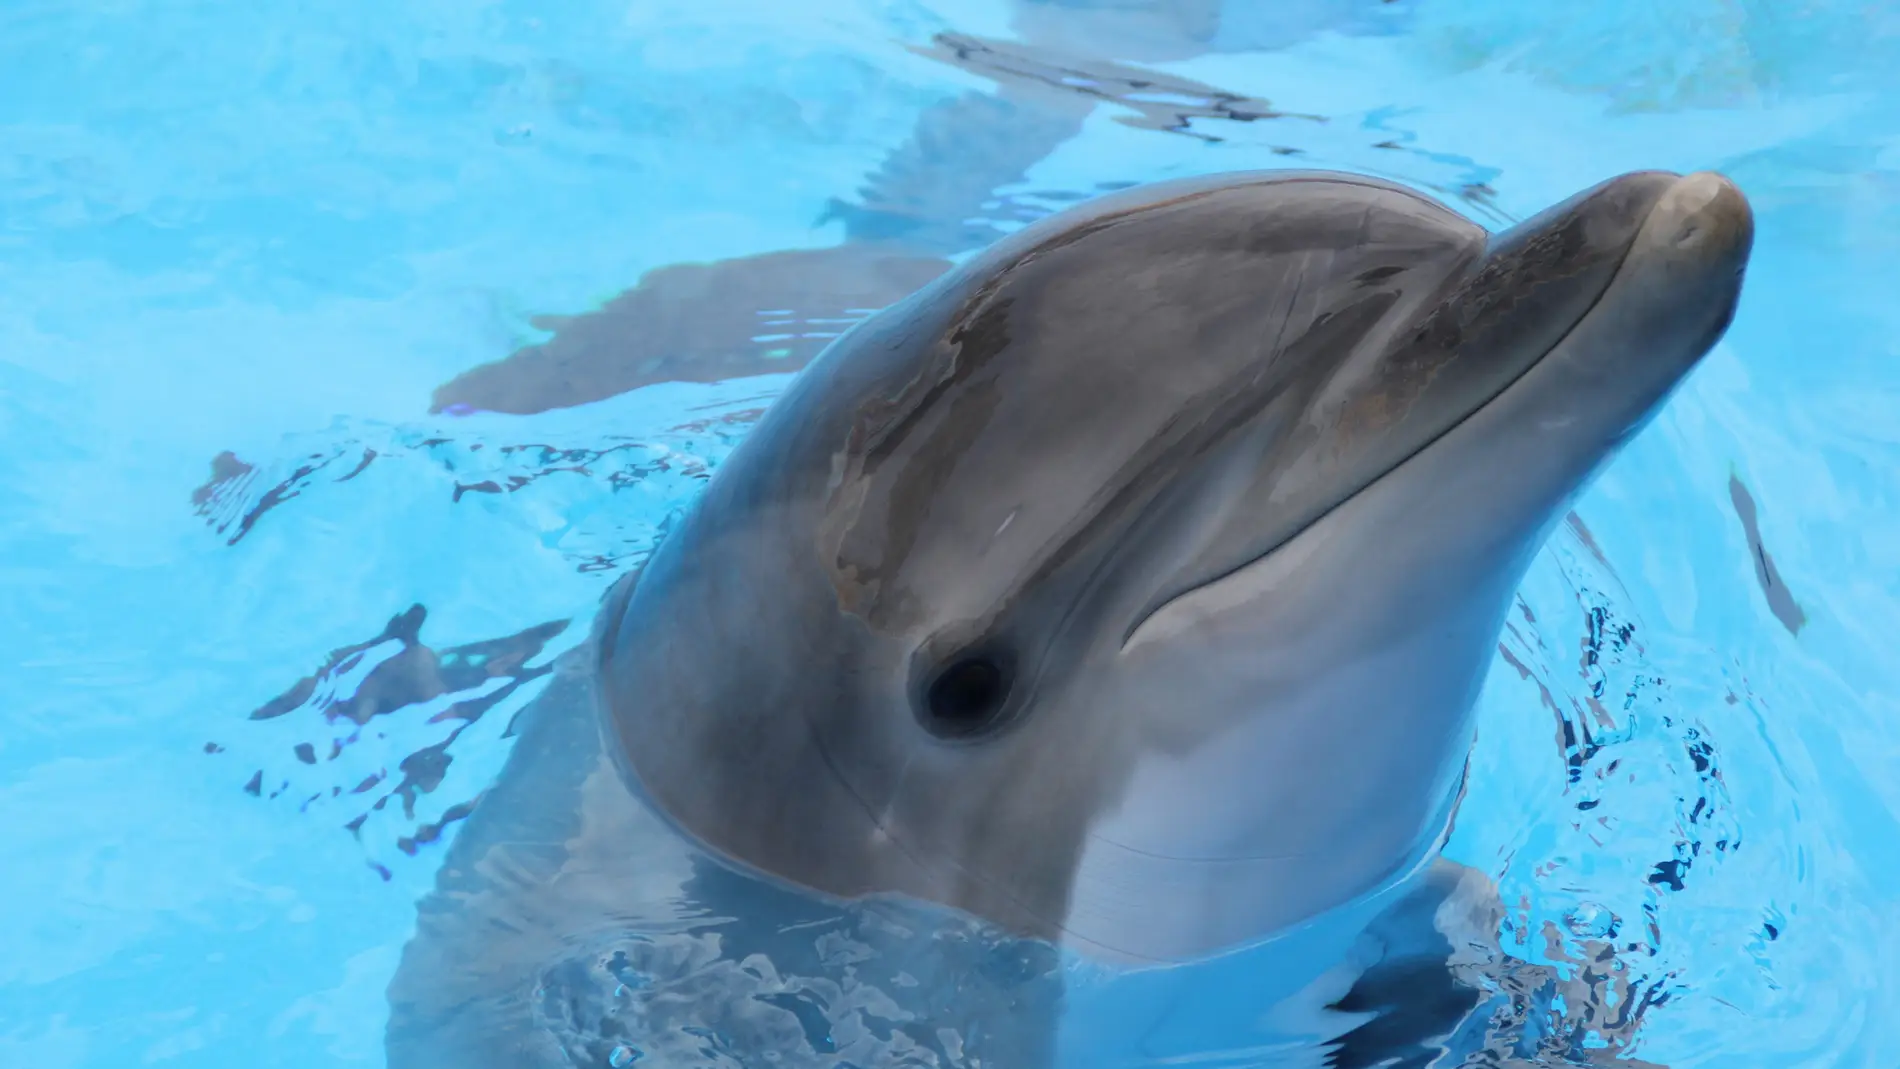 Los delfines utilizan gran variedad de señales sonoras para comunicarseLos delfines utilizan gran variedad de señales sonoras para comunicarse